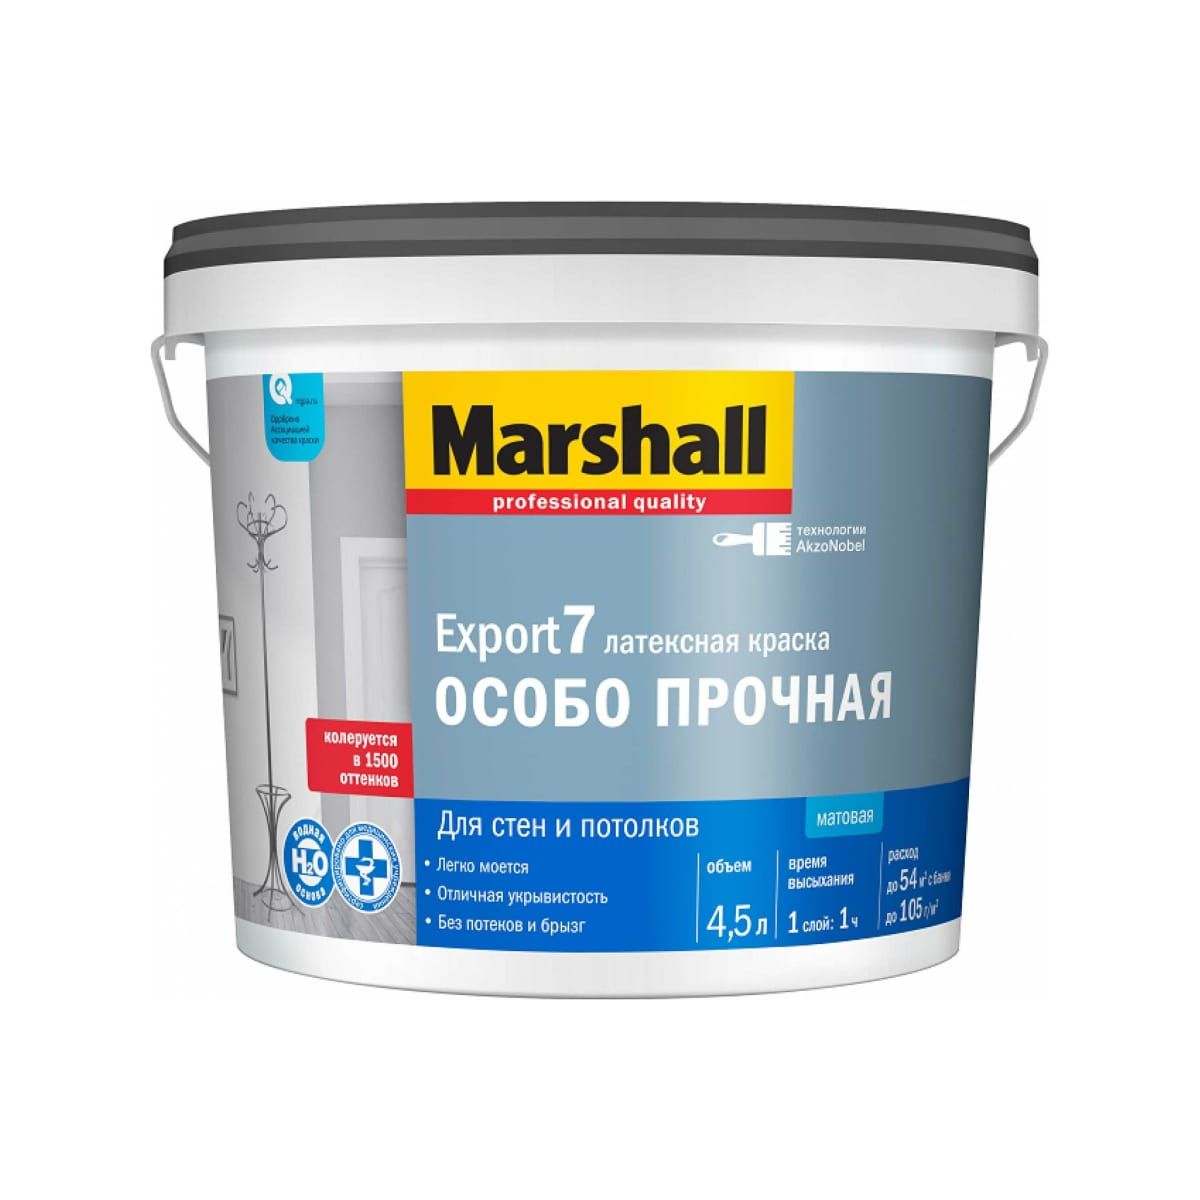 Краска Marshall Export 7 латексная, матовая, BC, 4,5 л краска marshall export 2 латексная глубокоматовая bc 9 л